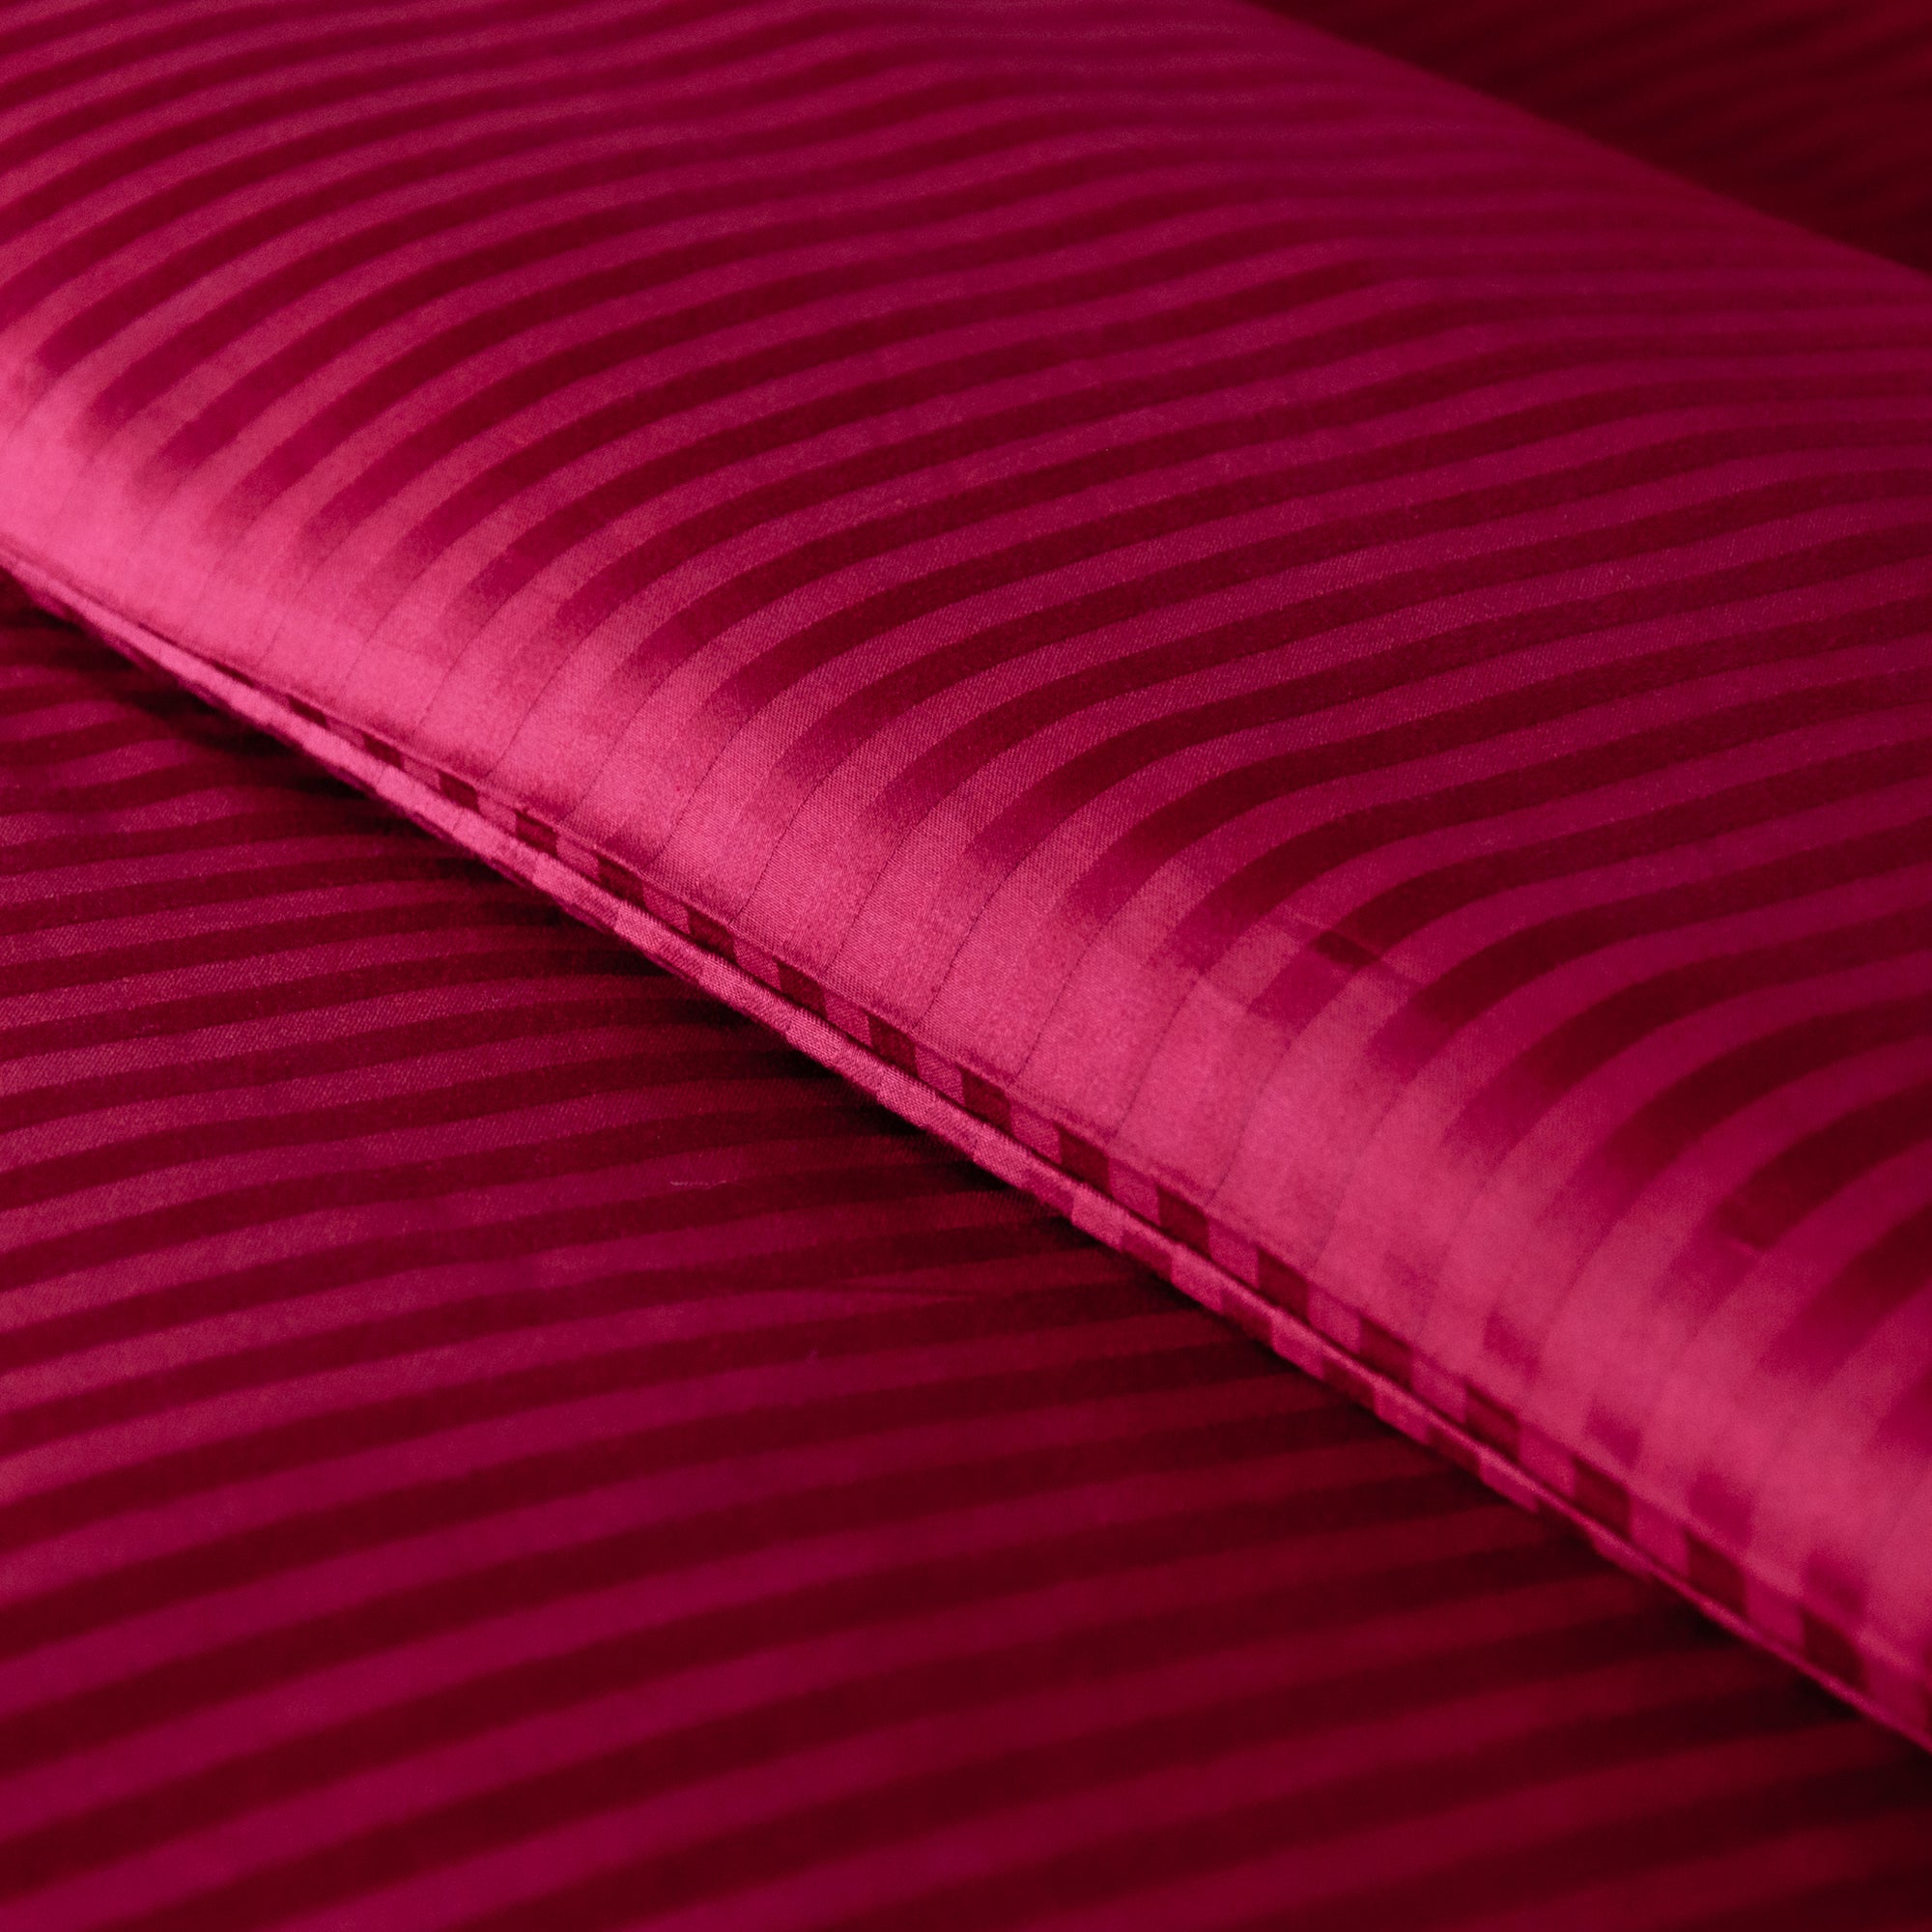 Ein Paar burgunderrot gestreifte Standard-Kissenbezüge aus 100 % Baumwollsatin